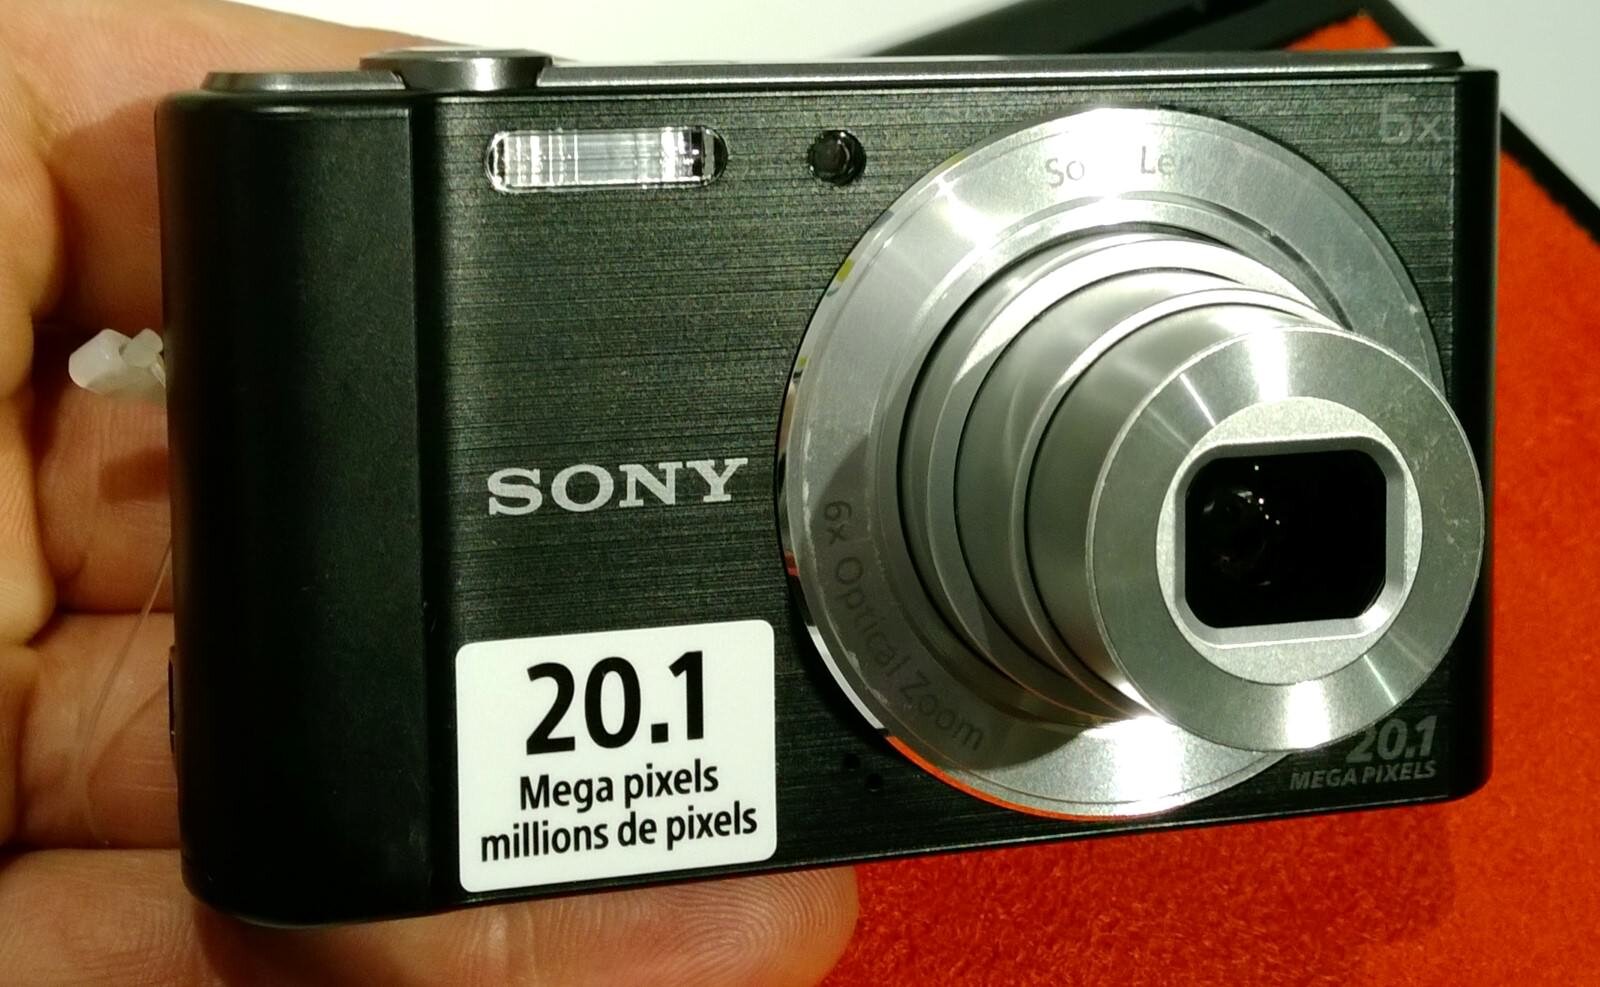 Máy ảnh Sony giá rẻ rất được ưa chuộng trên thị trường